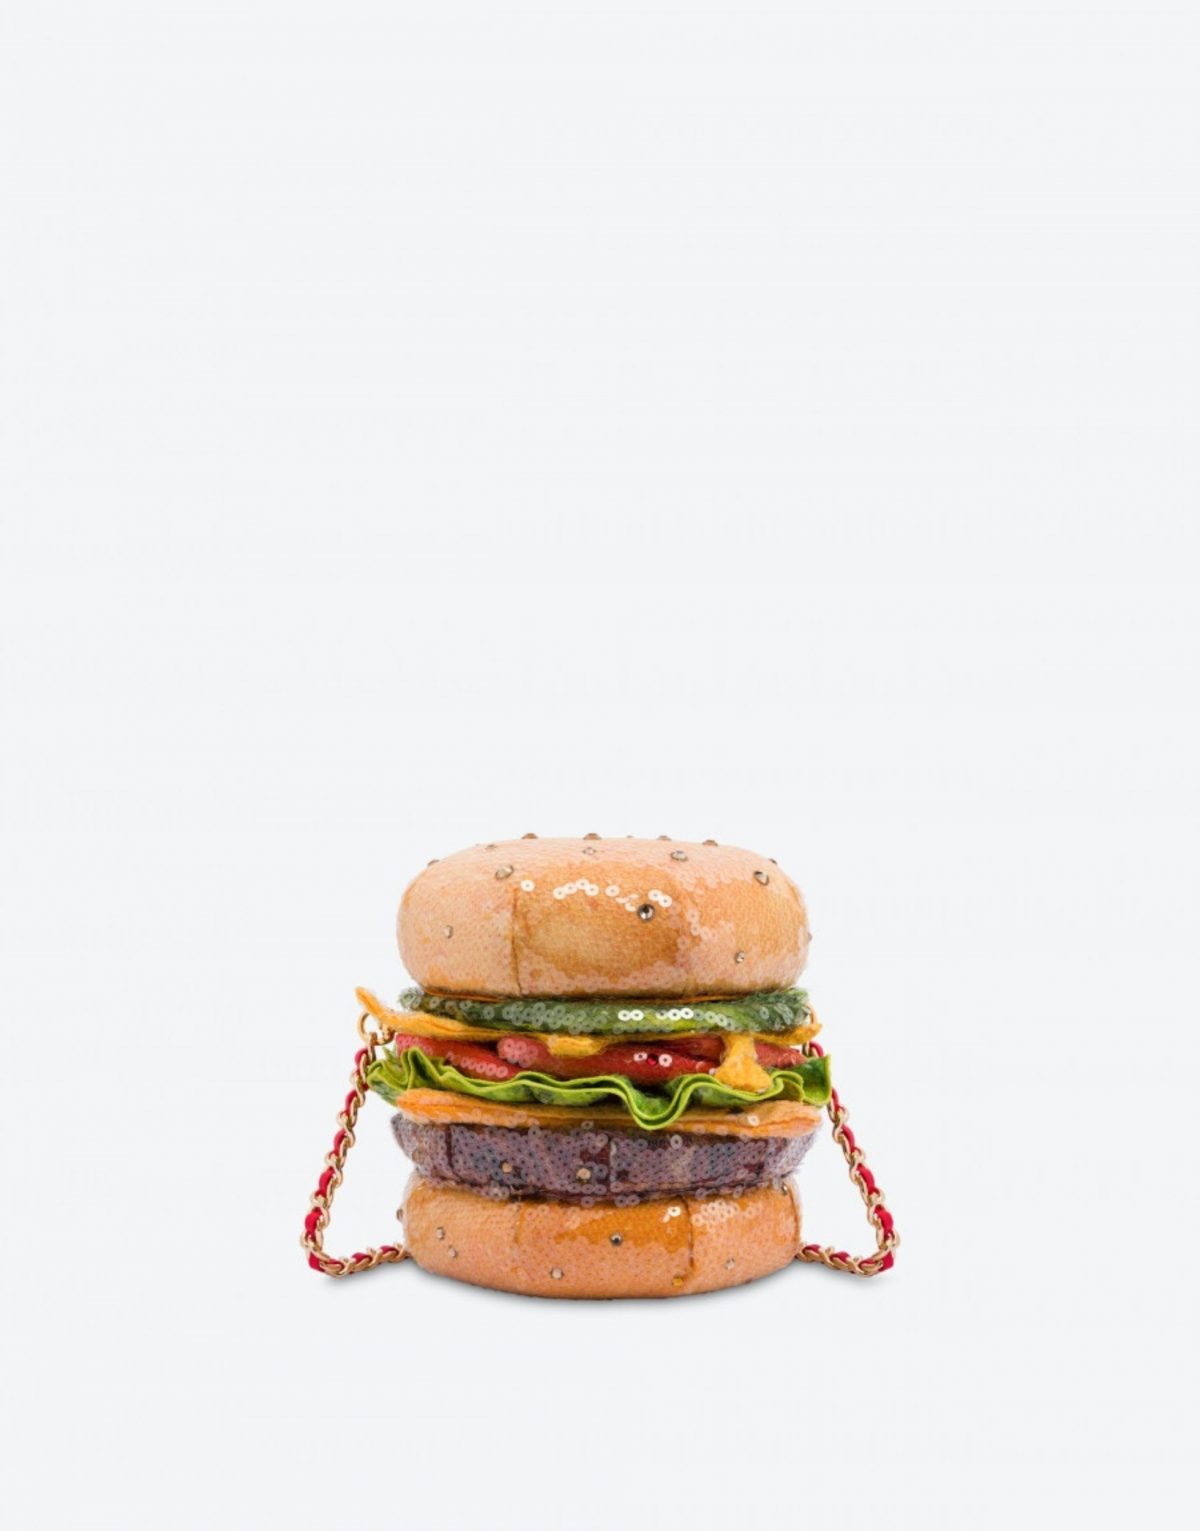 The burger bag